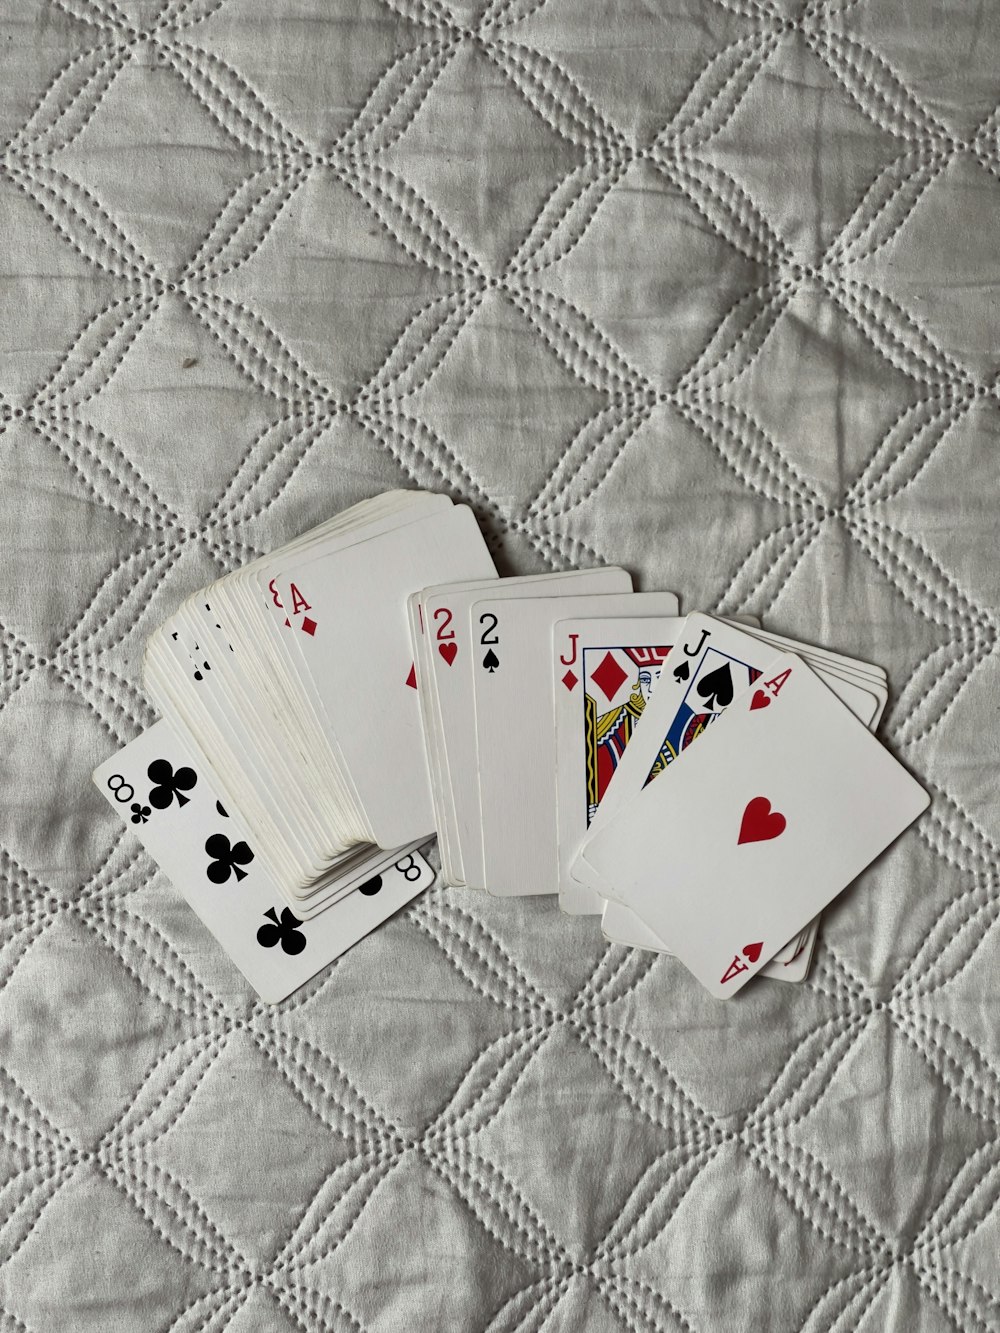 Quatre cartes à jouer reposent sur une courtepointe